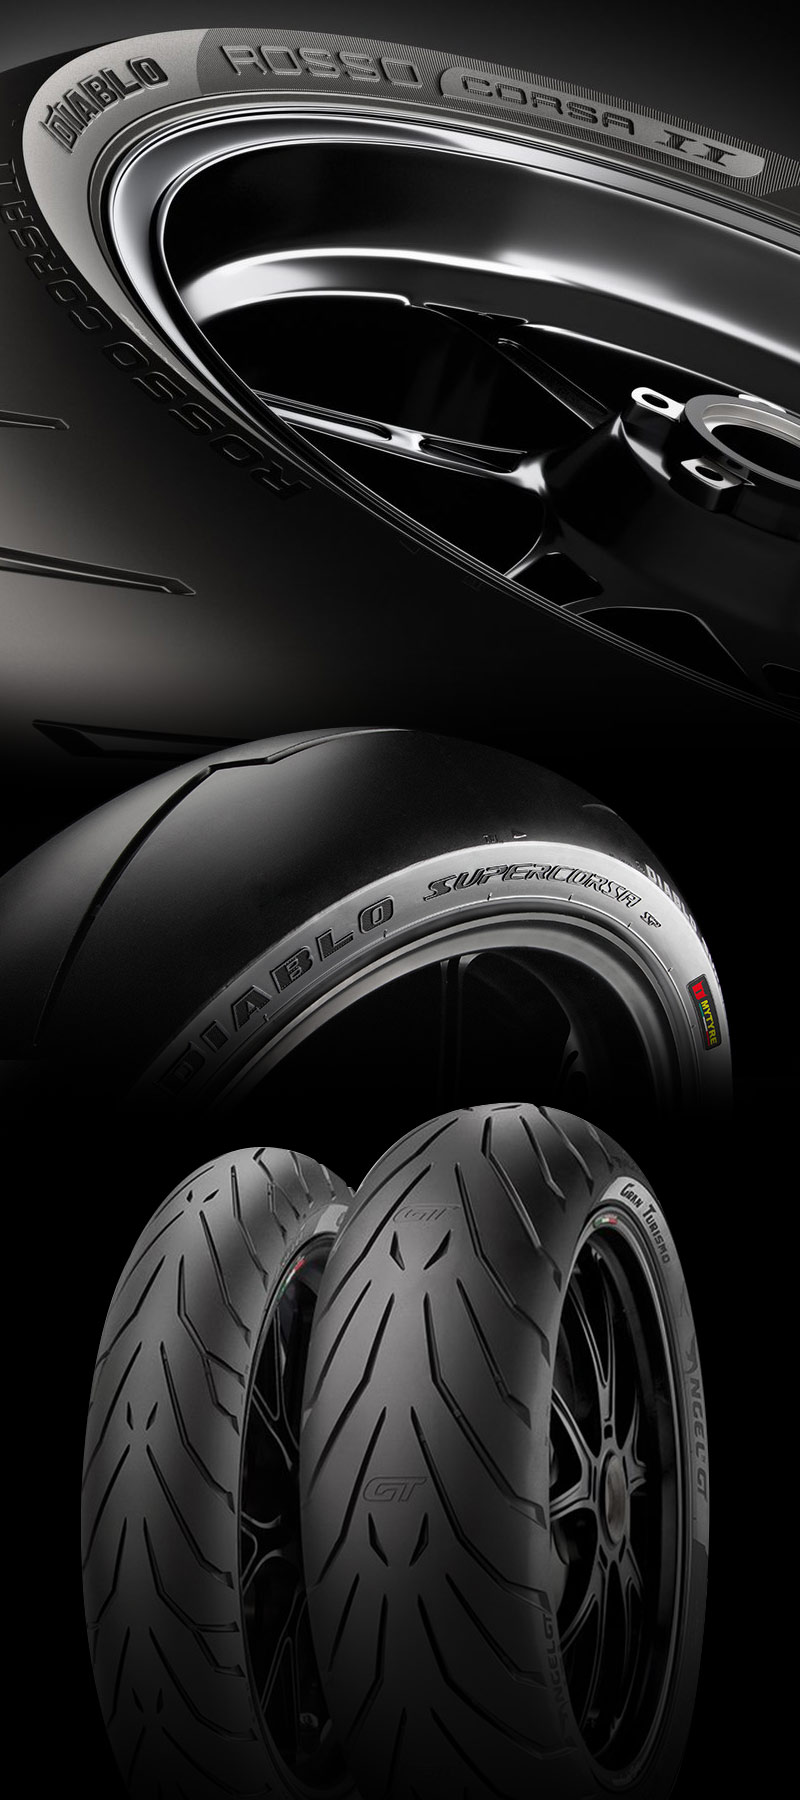 Olek Motocykle promocja Pirelli rękawice Dainese w prezencie